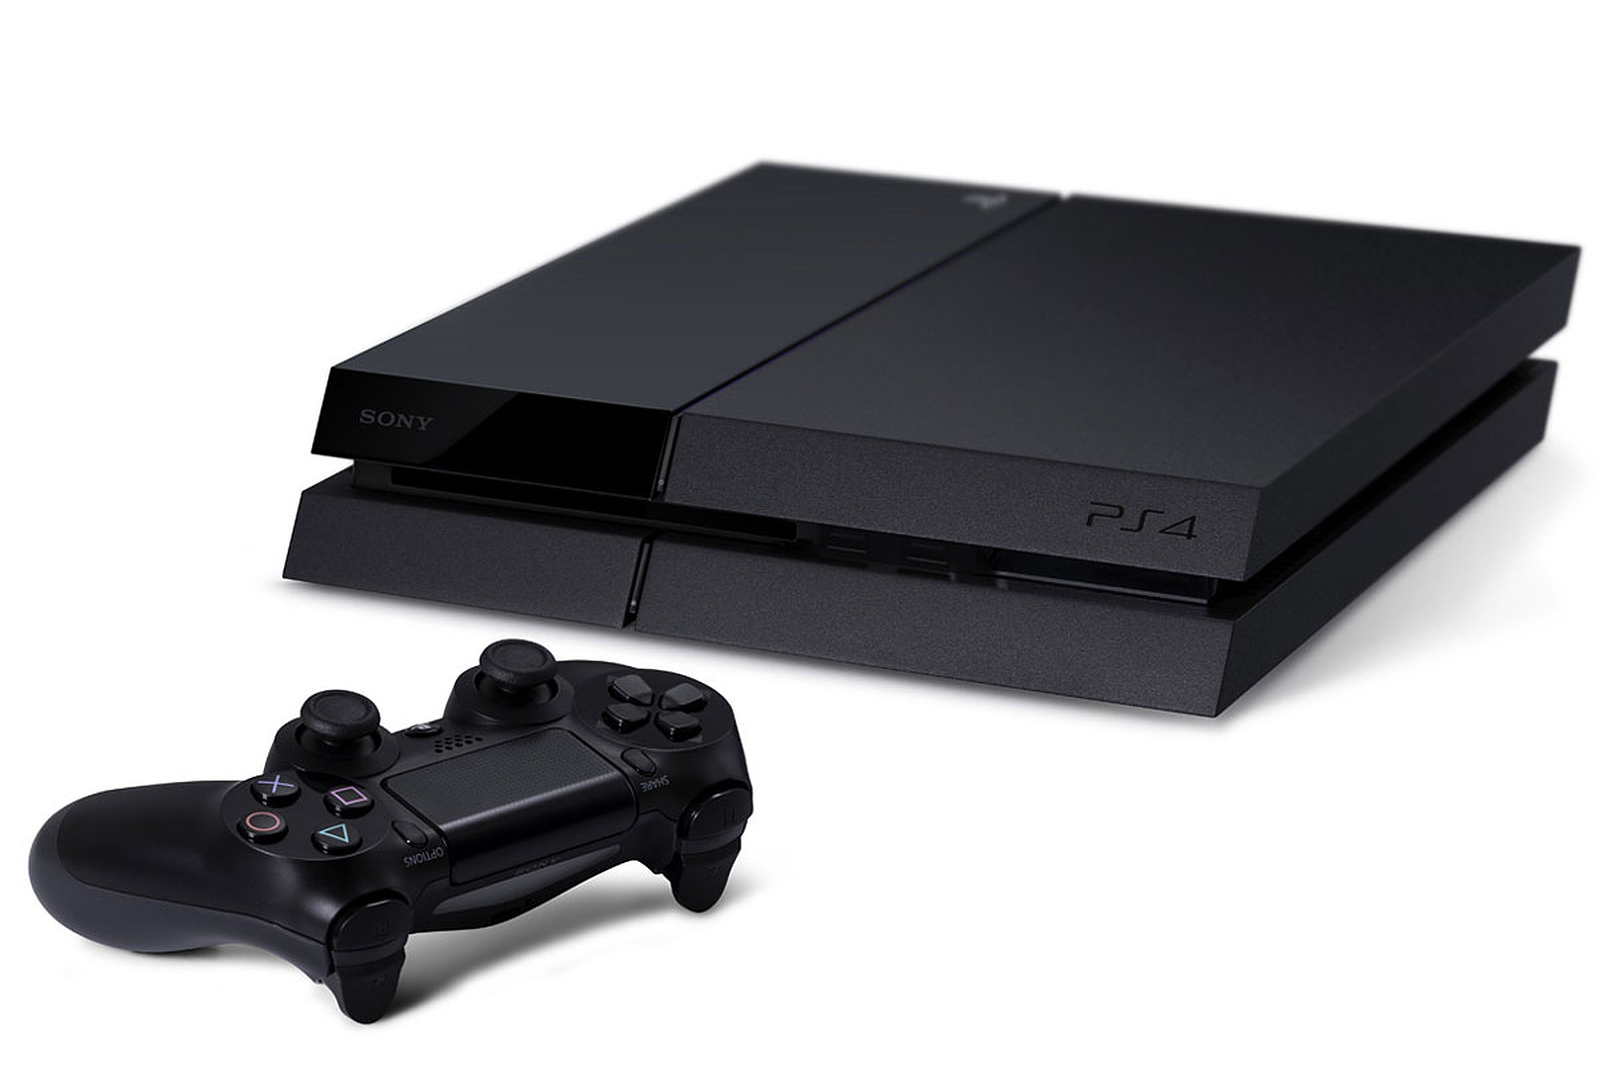 PlayStation 5 : la première mise à jour majeure apporte le